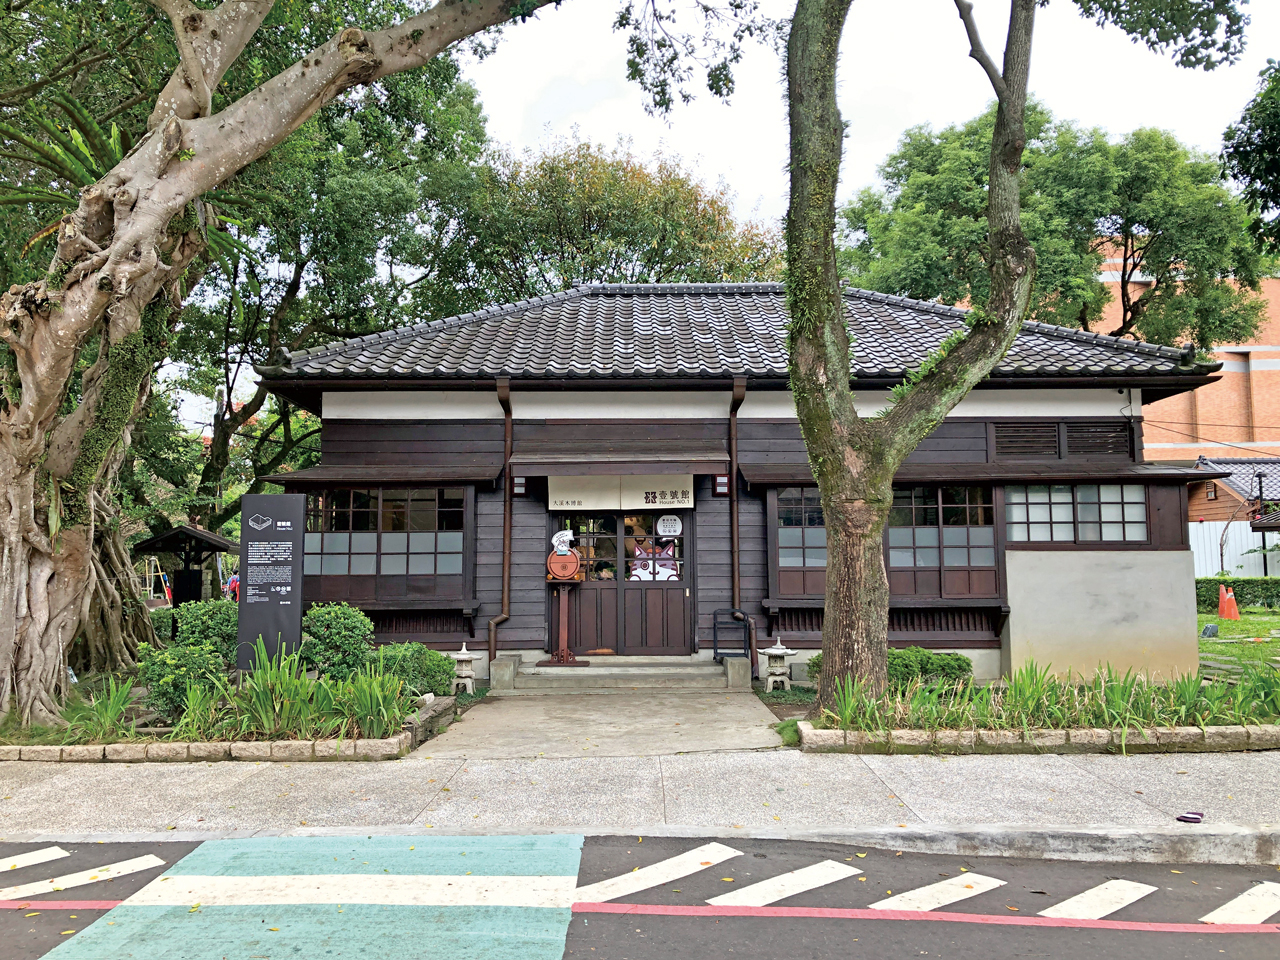 「壹號館」是2015年木博館第一棟修繕完成的公有館。